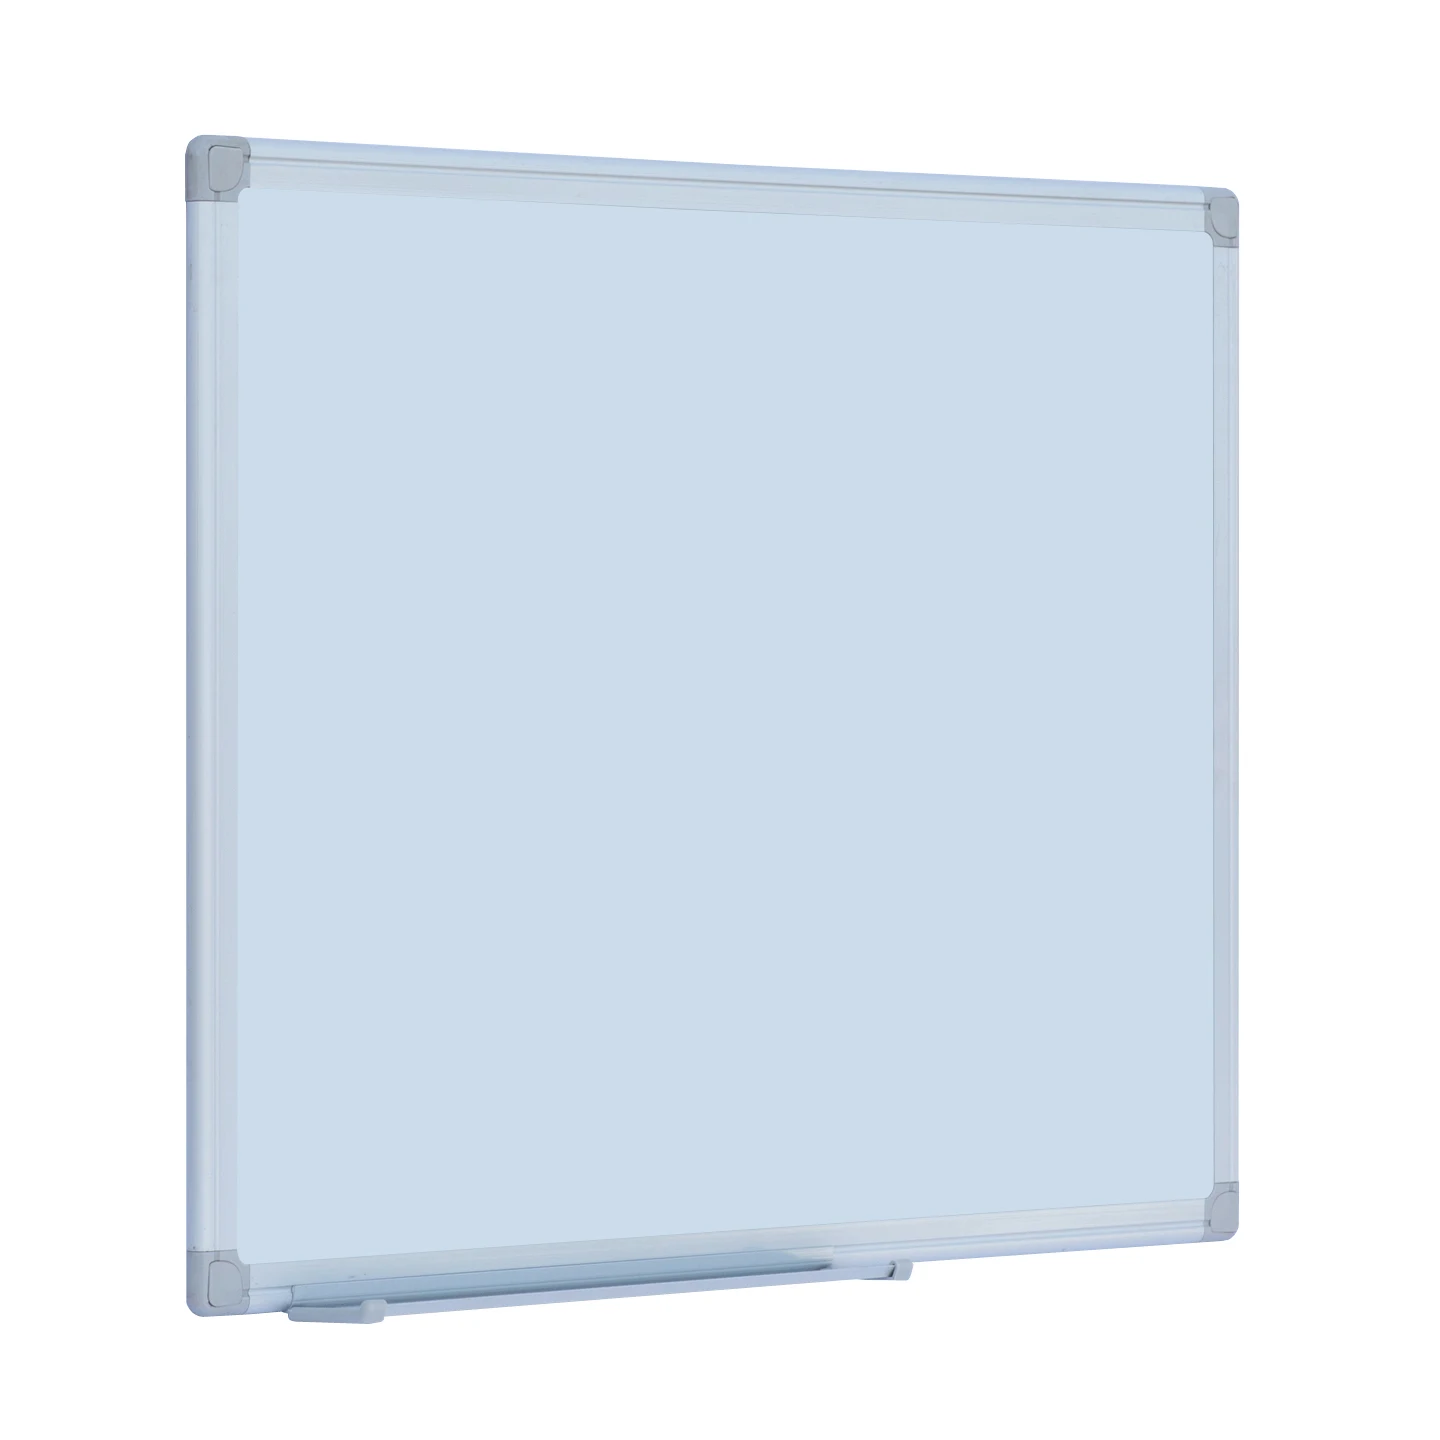 ABS Corner for Whiteboard Corner, Whiteboard Plastic Corner for